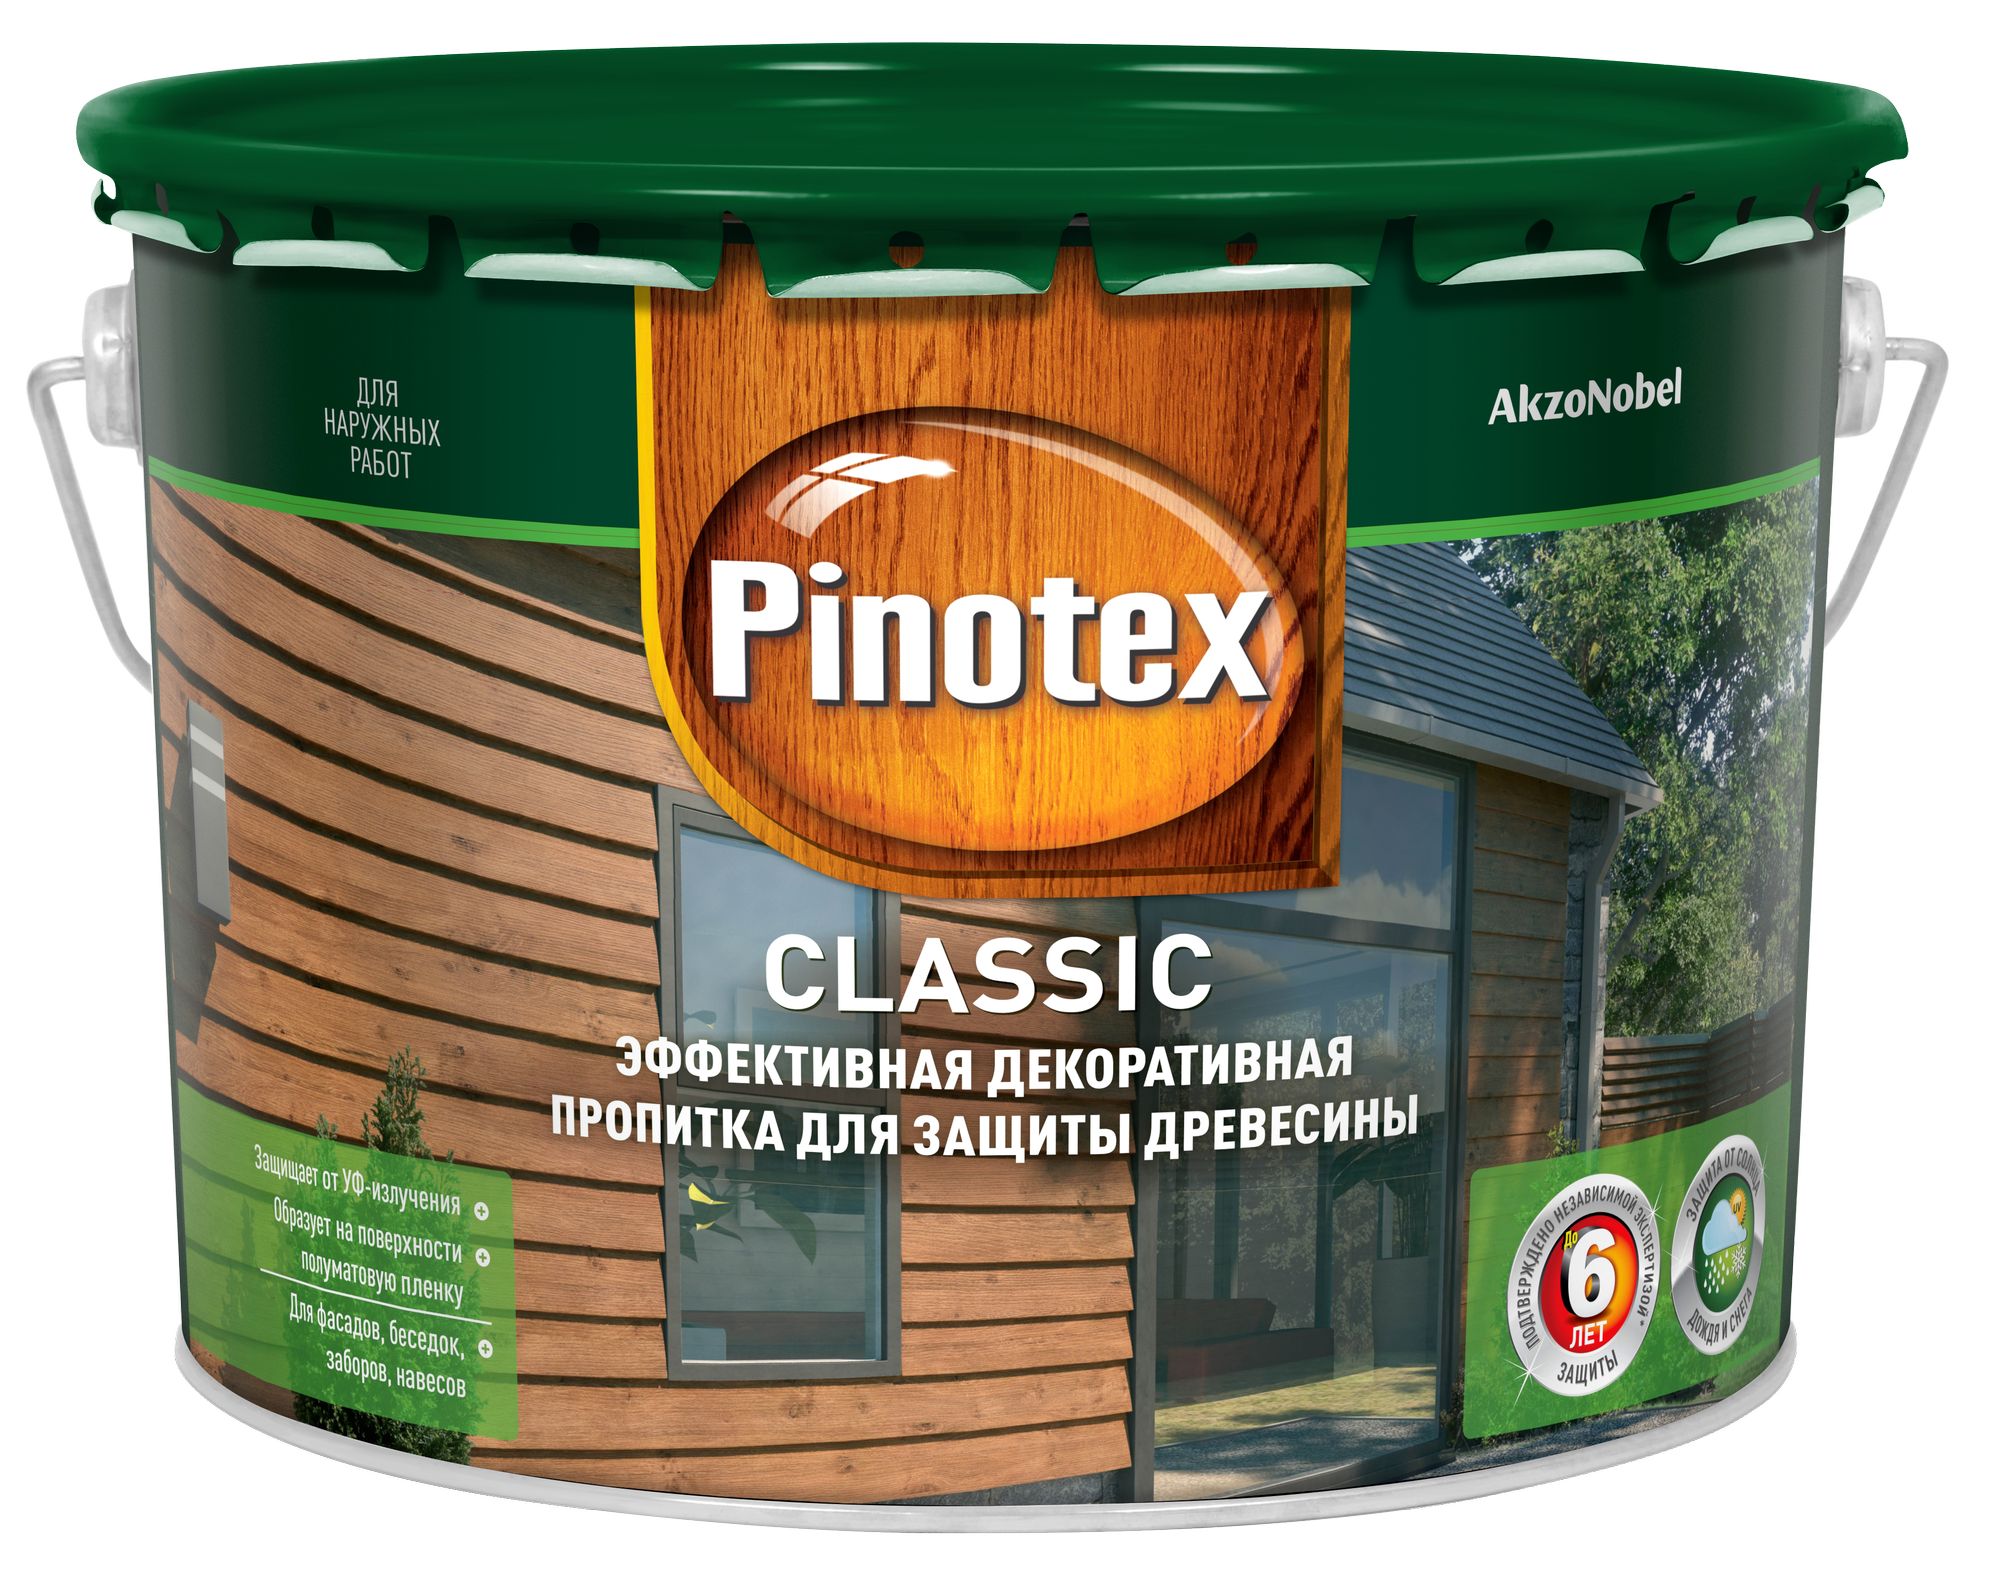 Pinotex CLASSIC